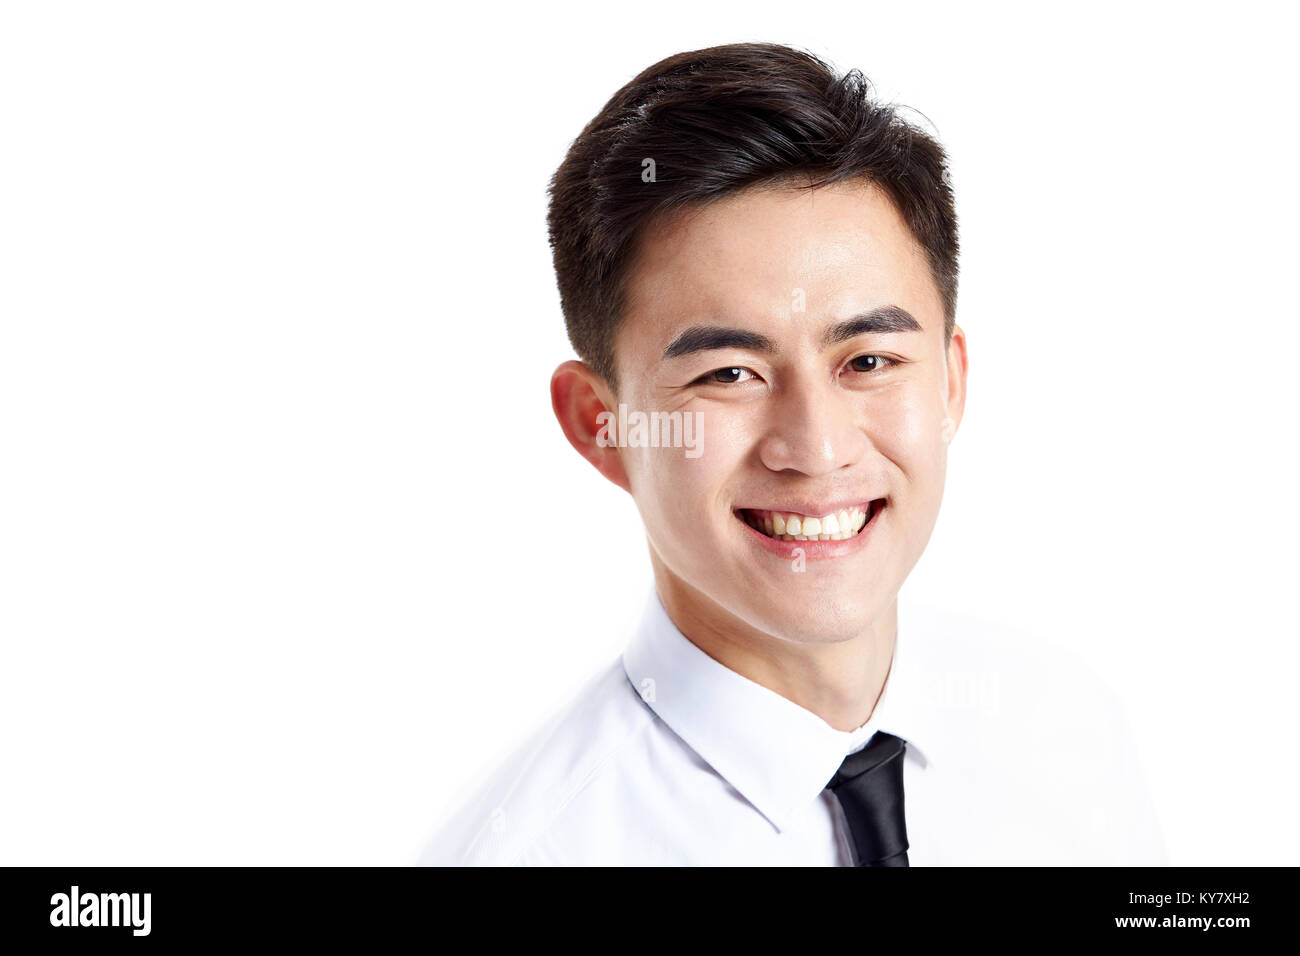 Foto de estudio de un joven hombre de negocios asiáticos feliz mirando a la cámara con gran sonrisa, aislado sobre fondo blanco. Foto de stock